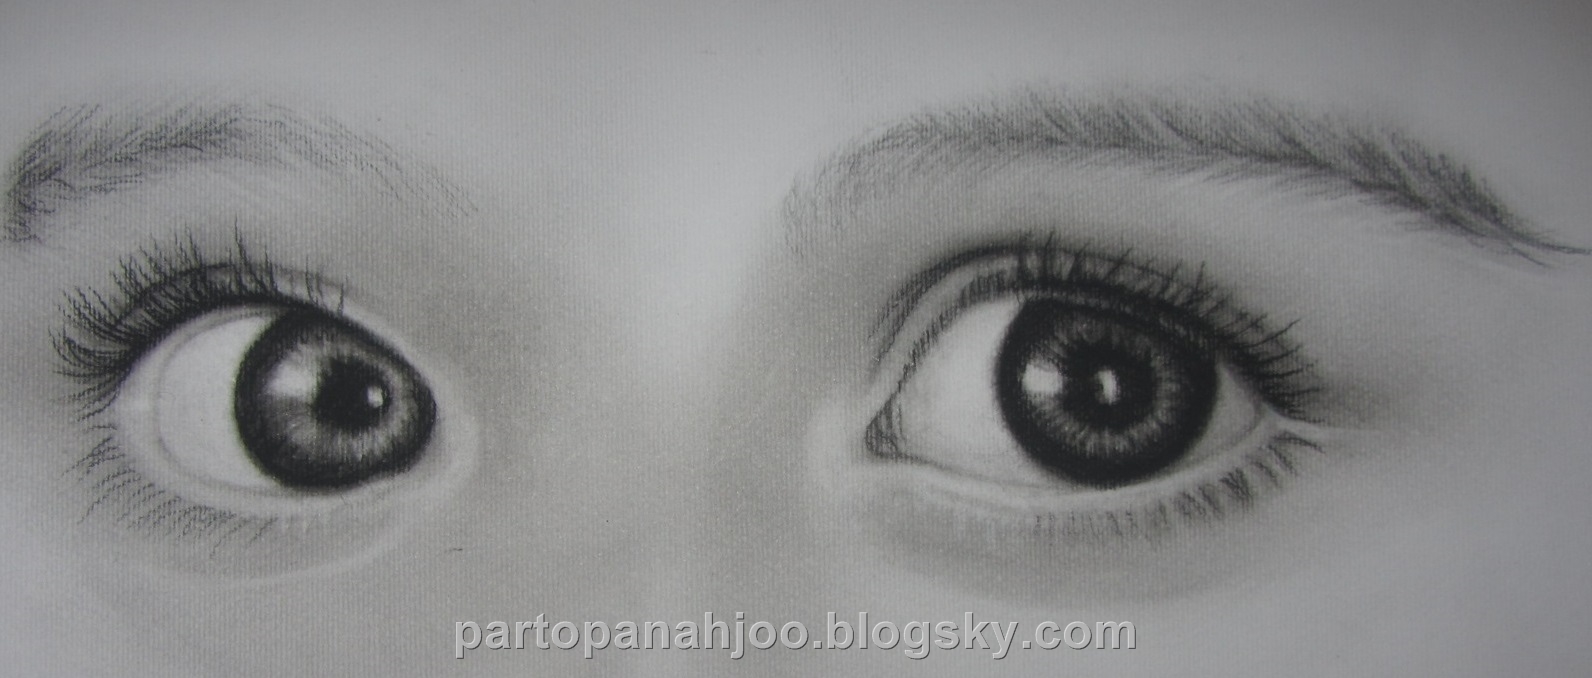 فیلم طراحی چشم و ابرو با مداد سیاه